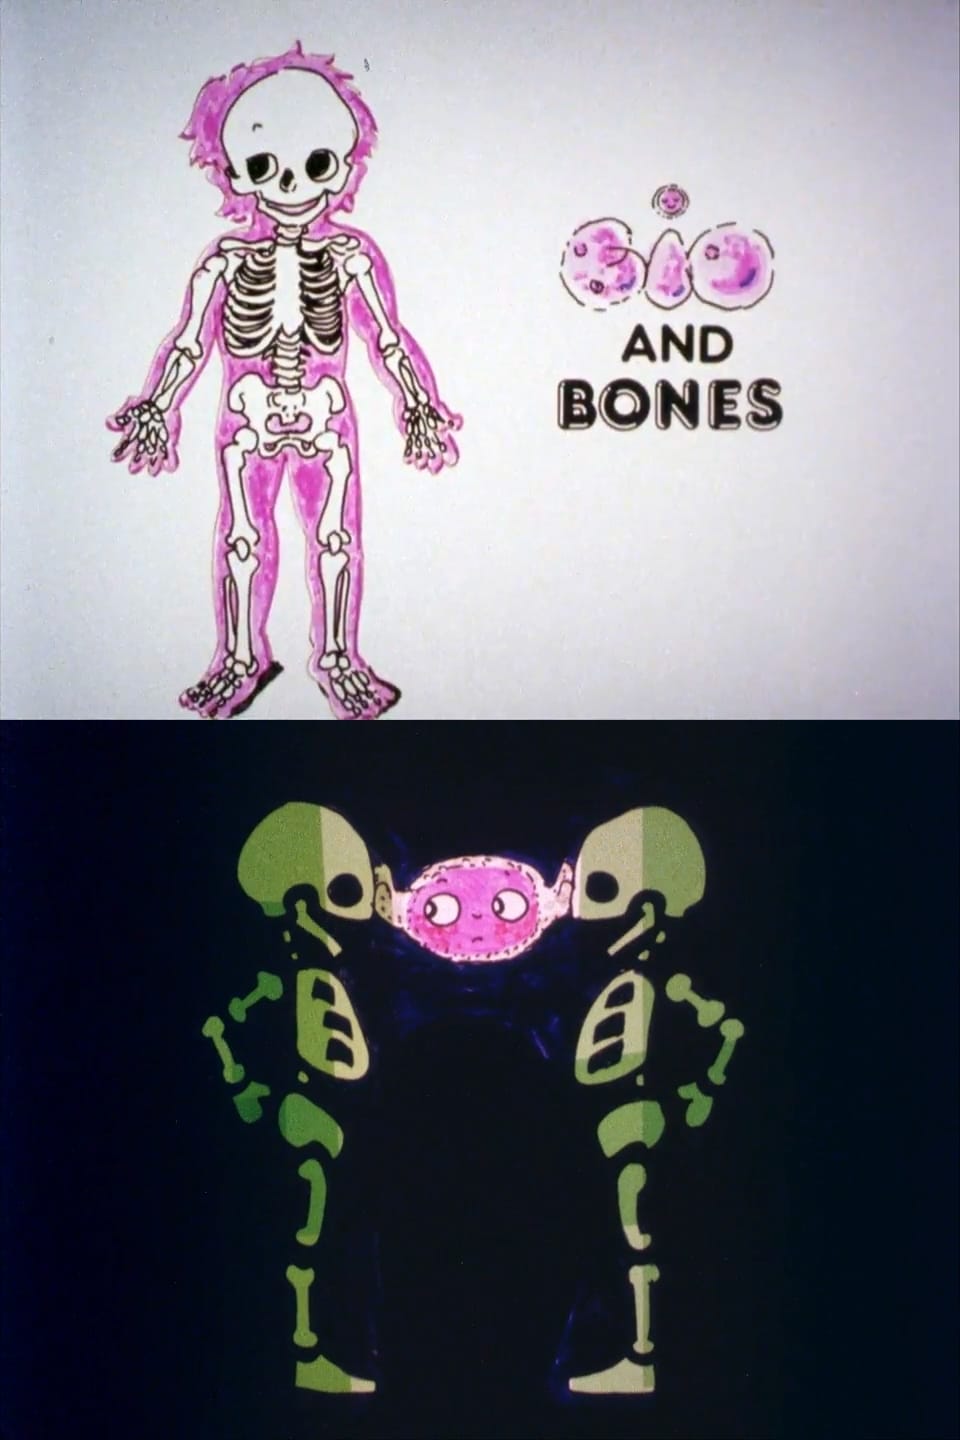 Bio and Bones